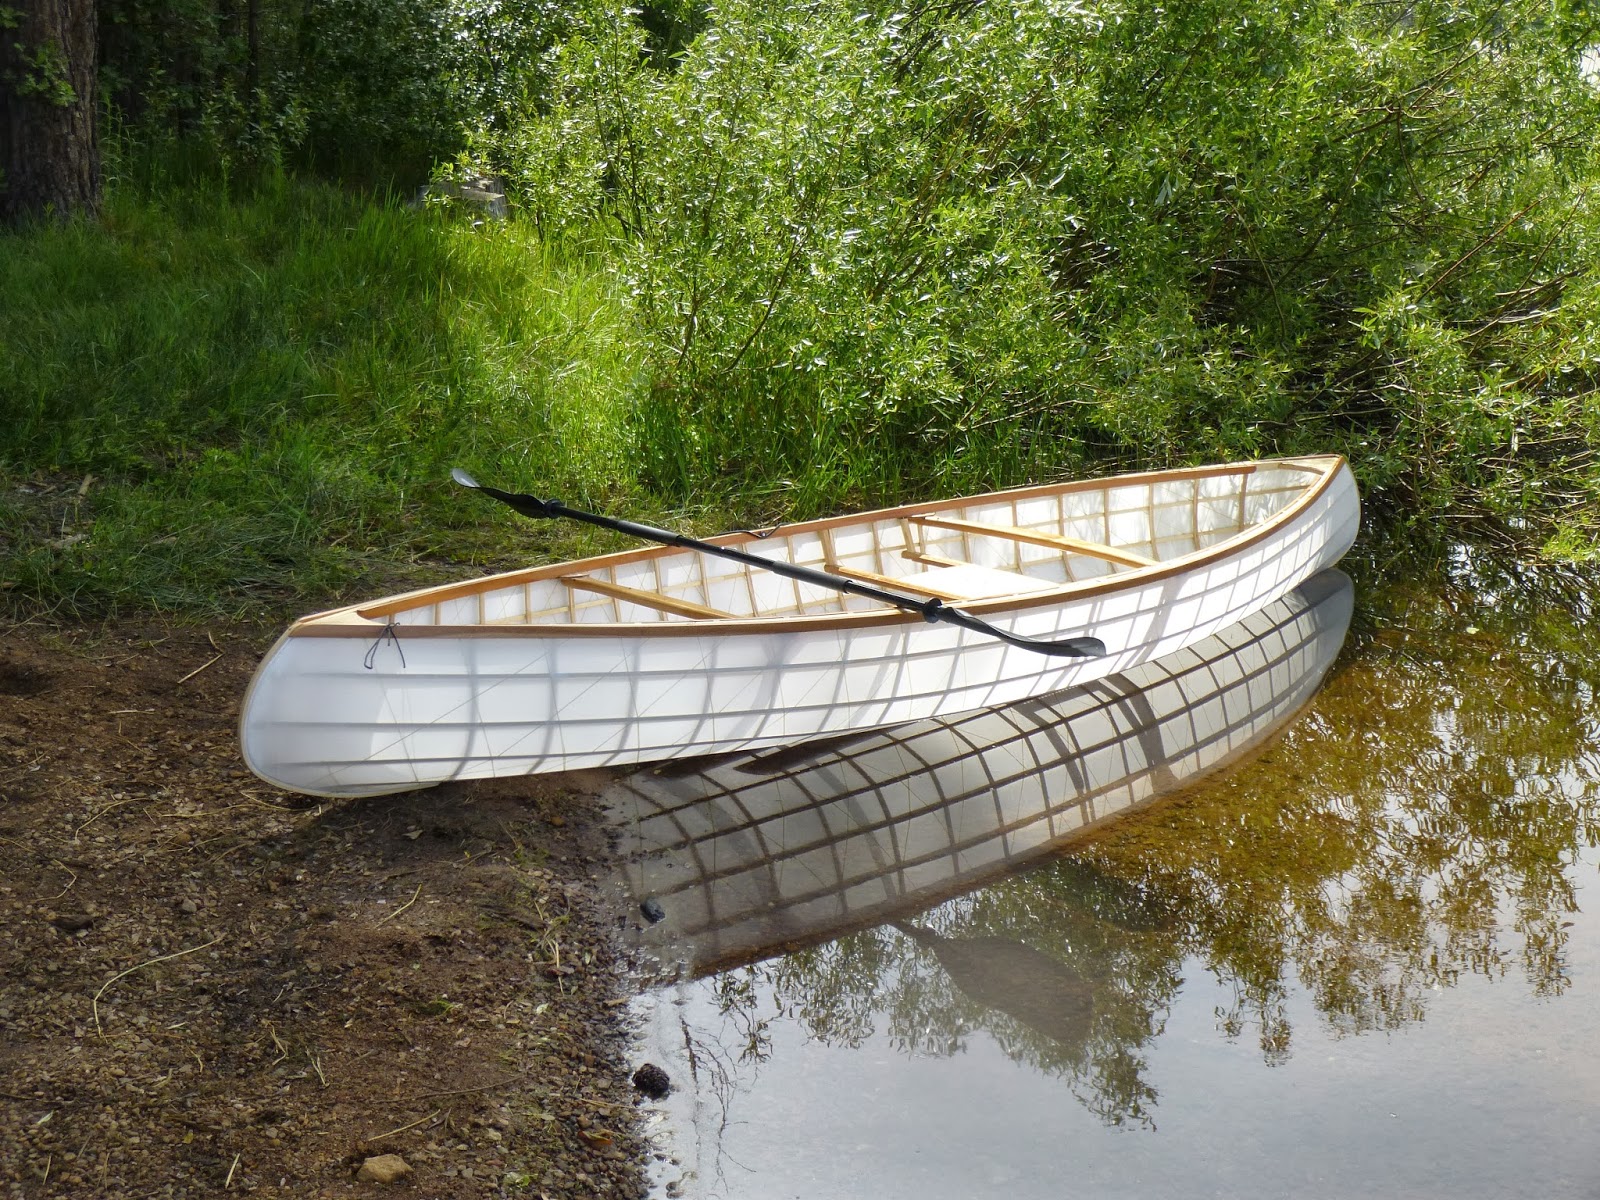 My Skin on Frame Canoe: How I Built My Skin On Frame Canoe